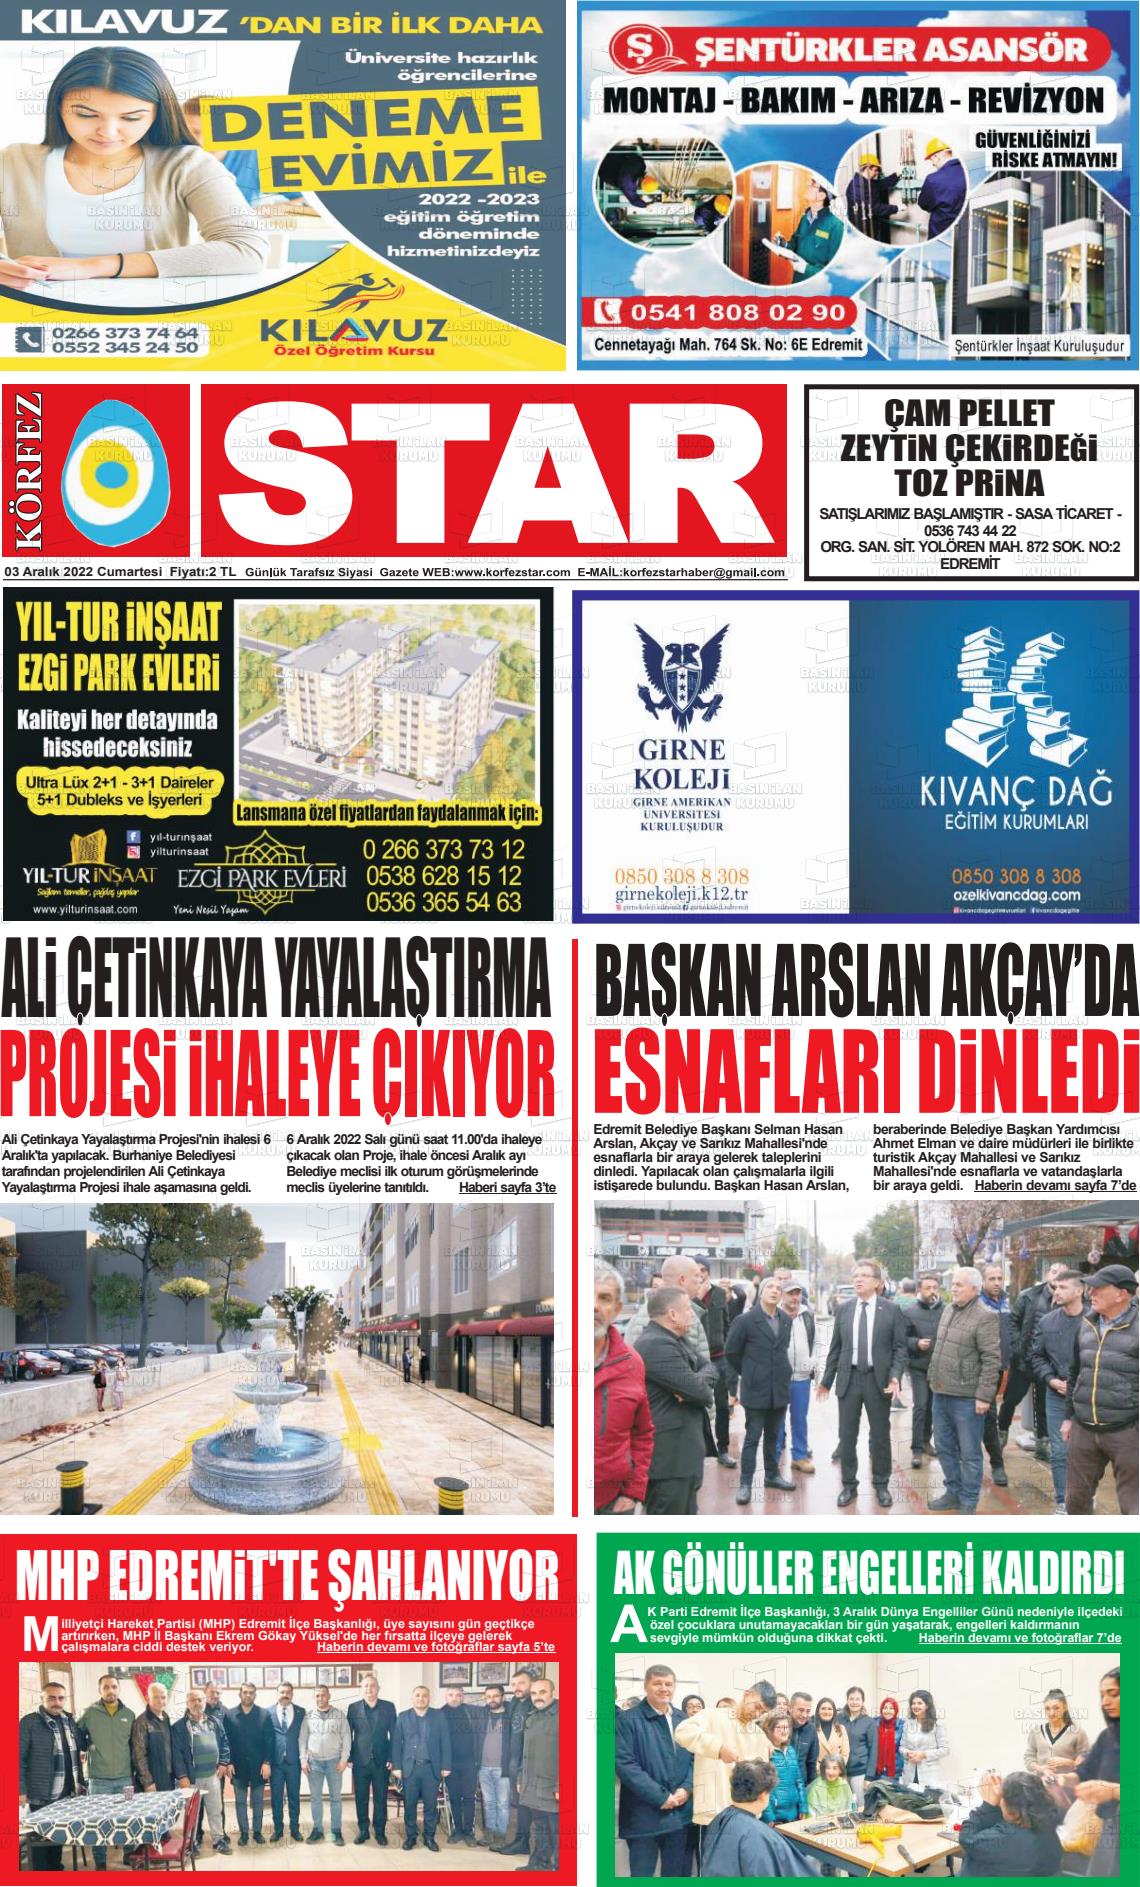 03 Aralık 2022 Körfez Star Gazete Manşeti